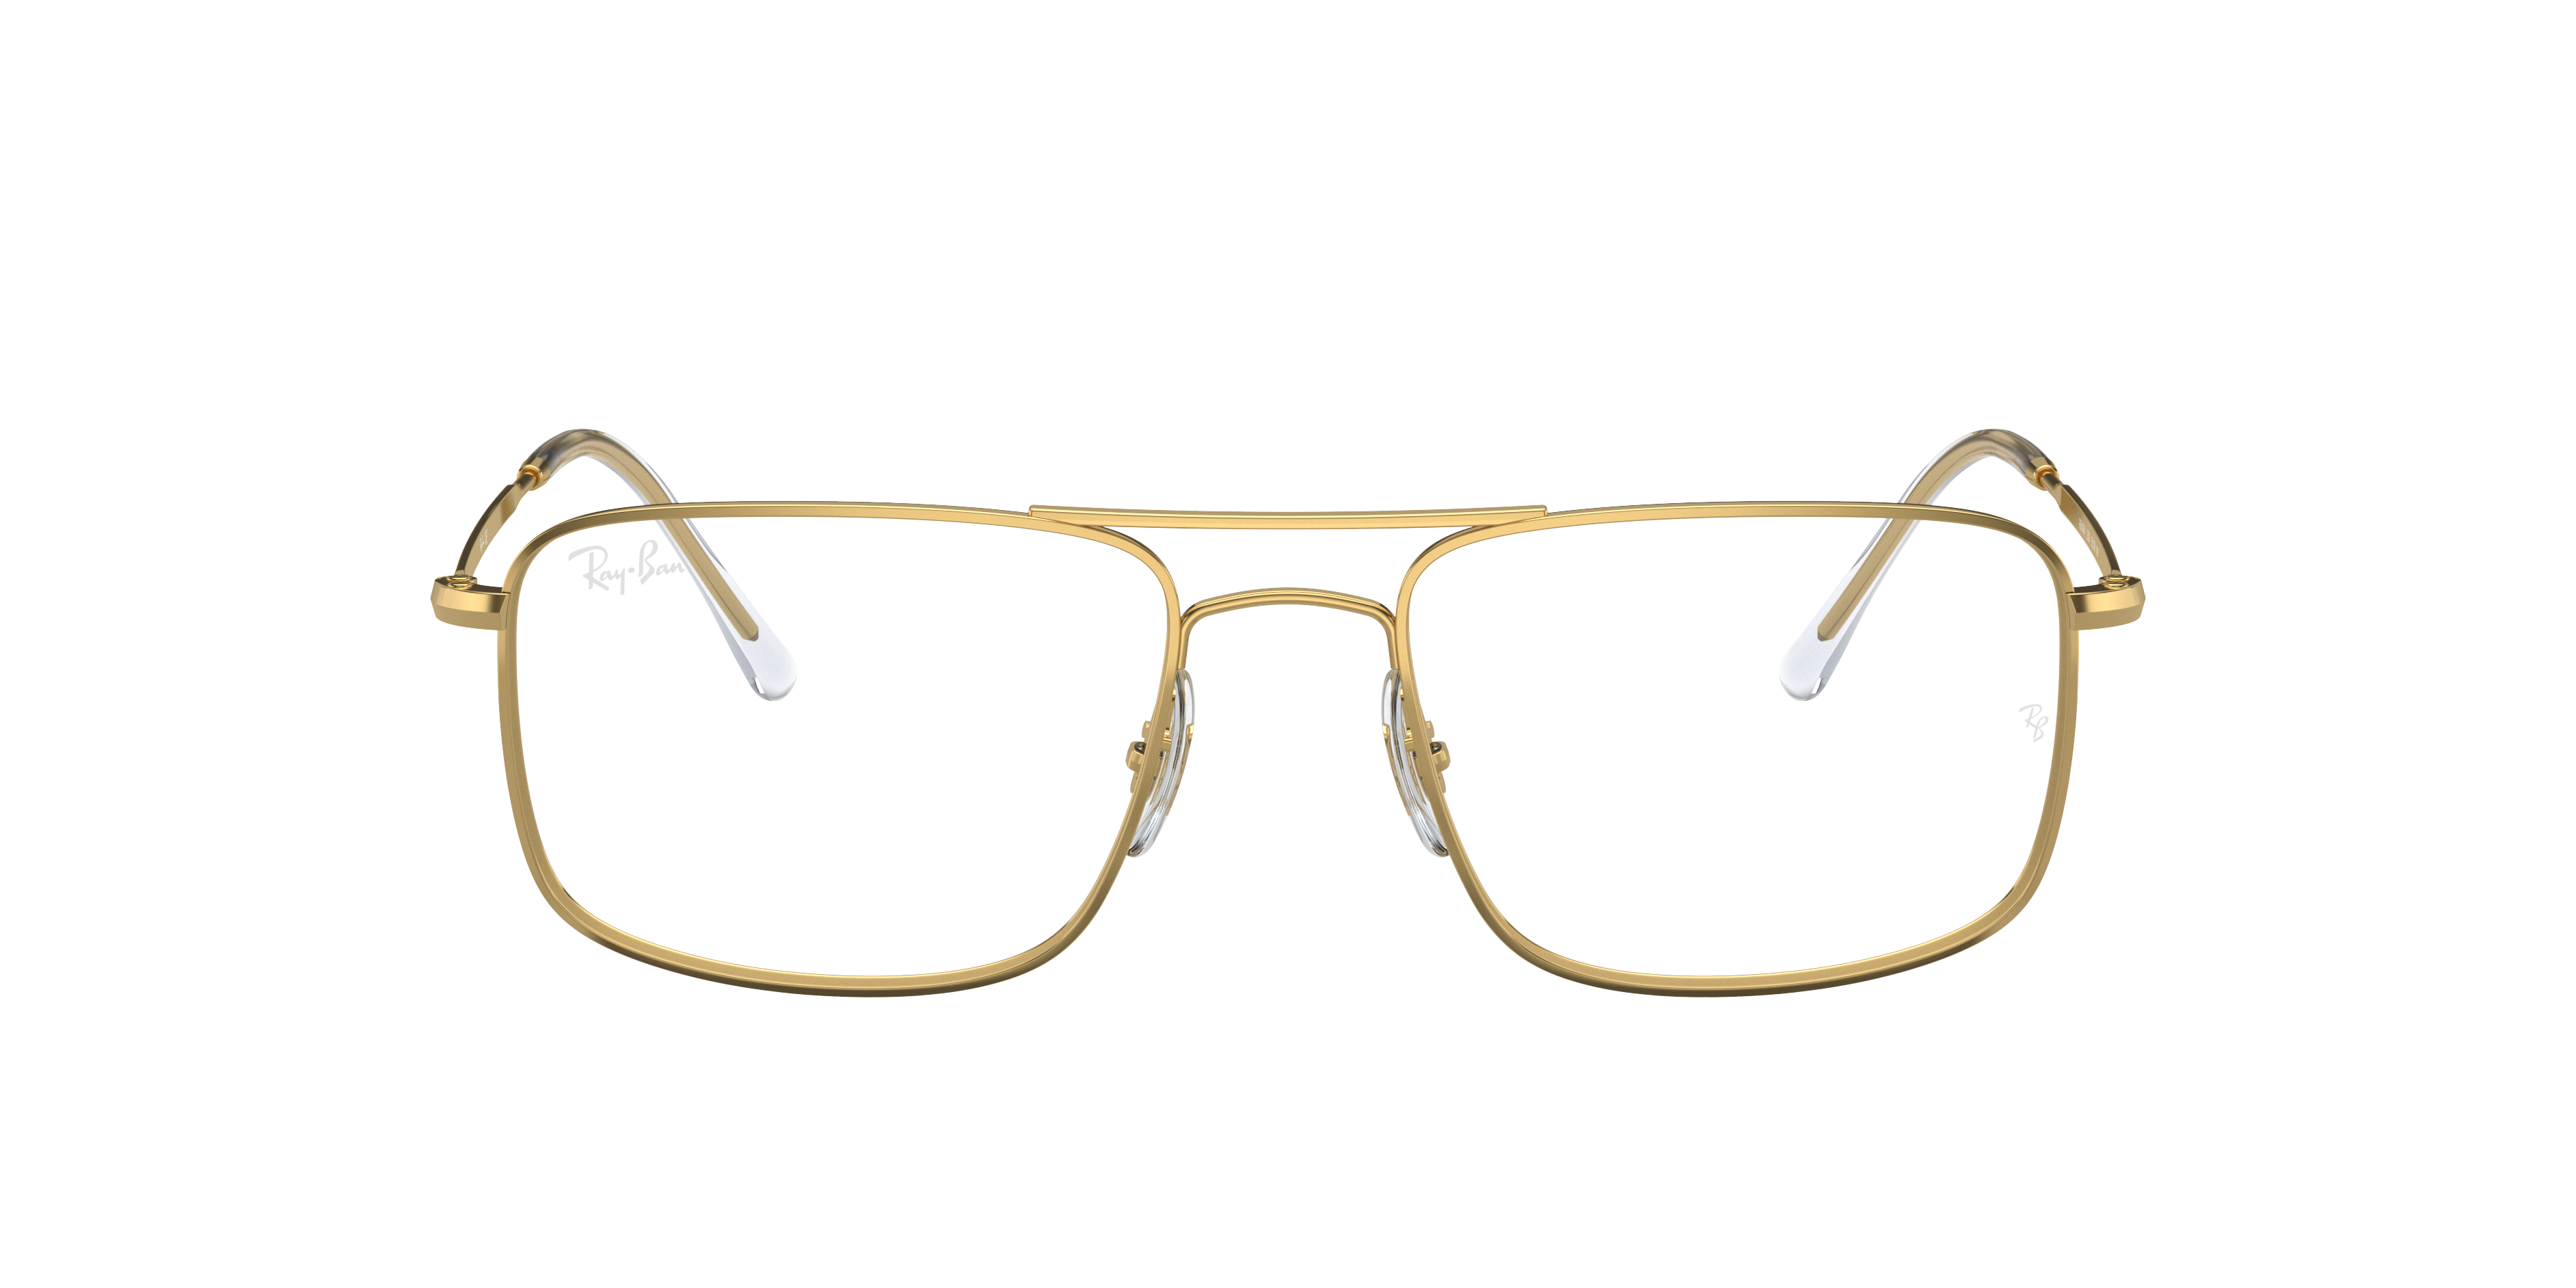 ray ban frames for men's glasses